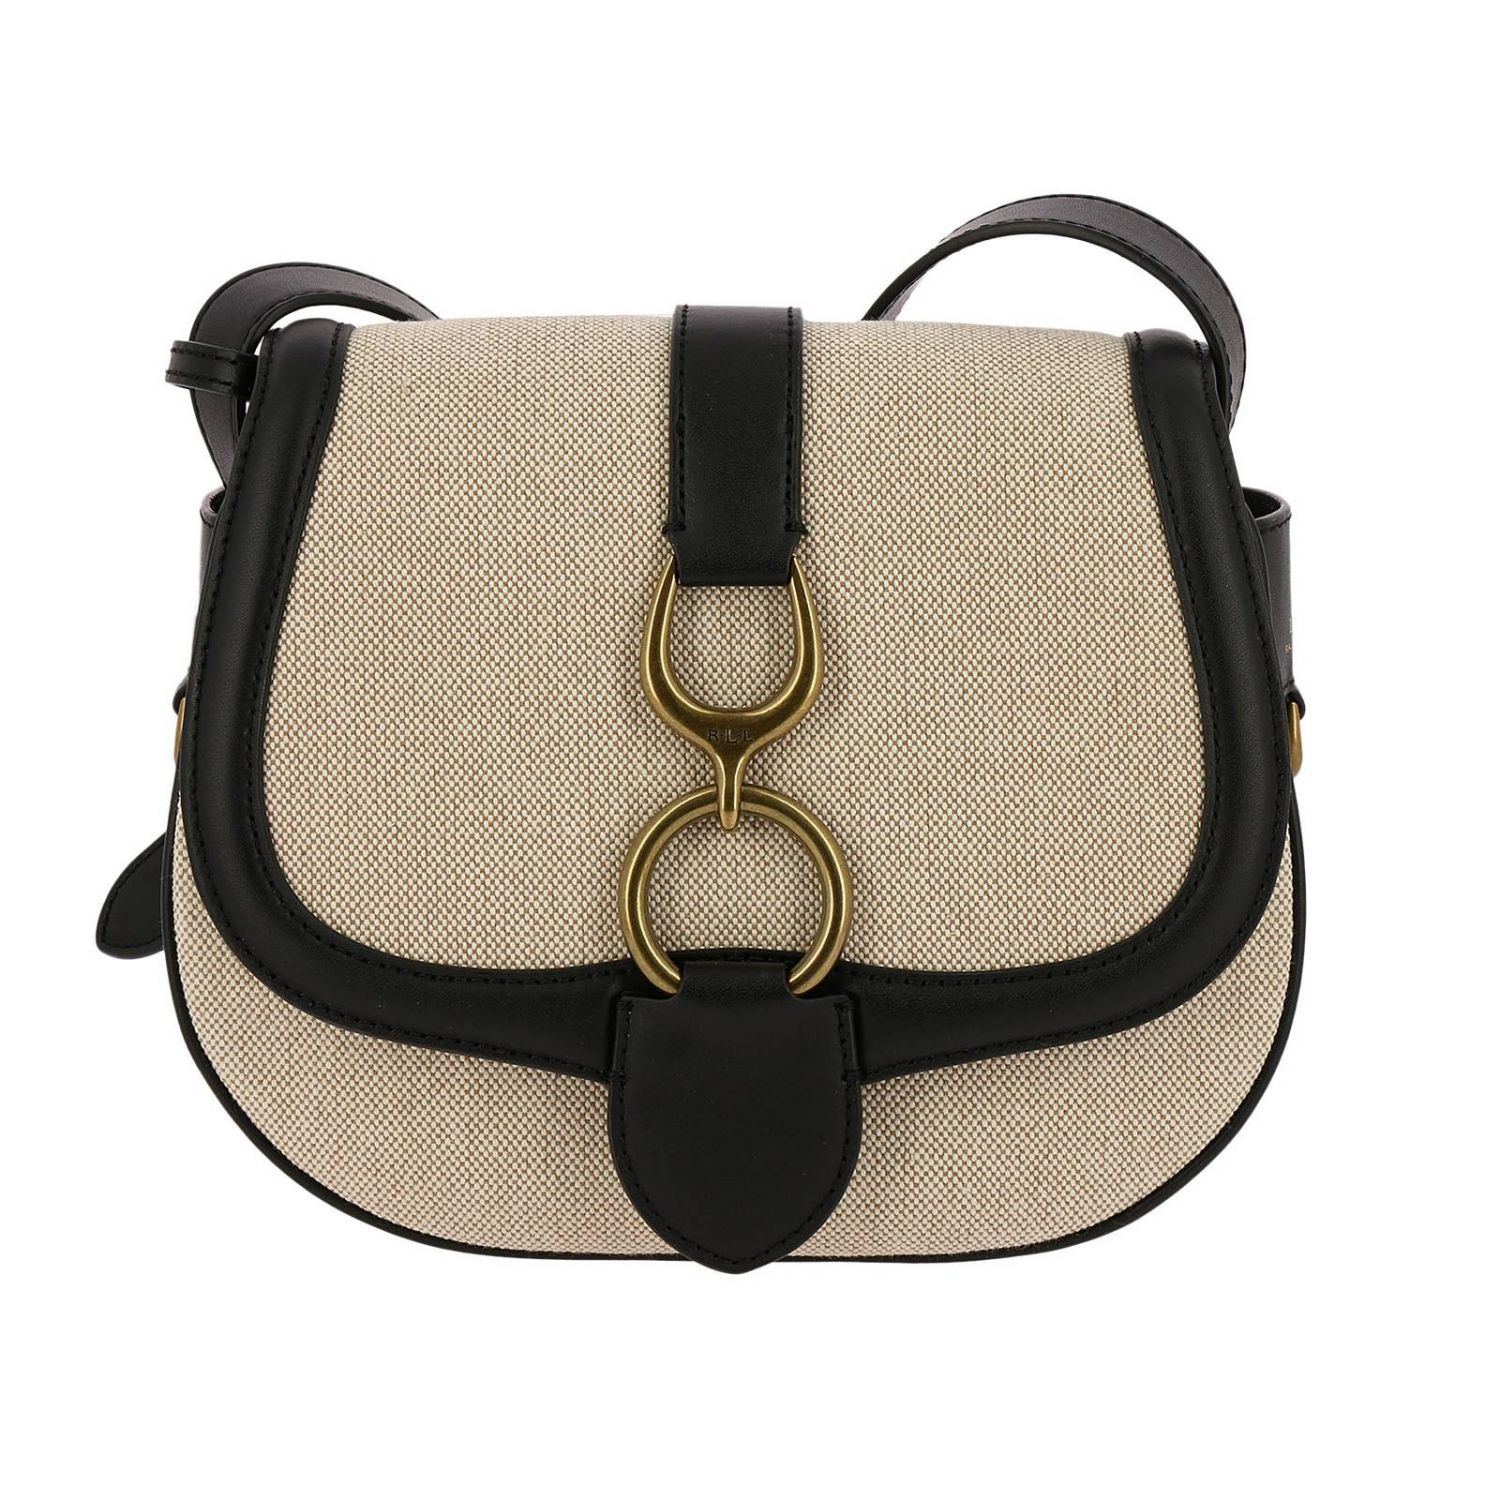 Lauren Ralph Lauren Outlet: Handbag women | Handbag Lauren Ralph Lauren ...